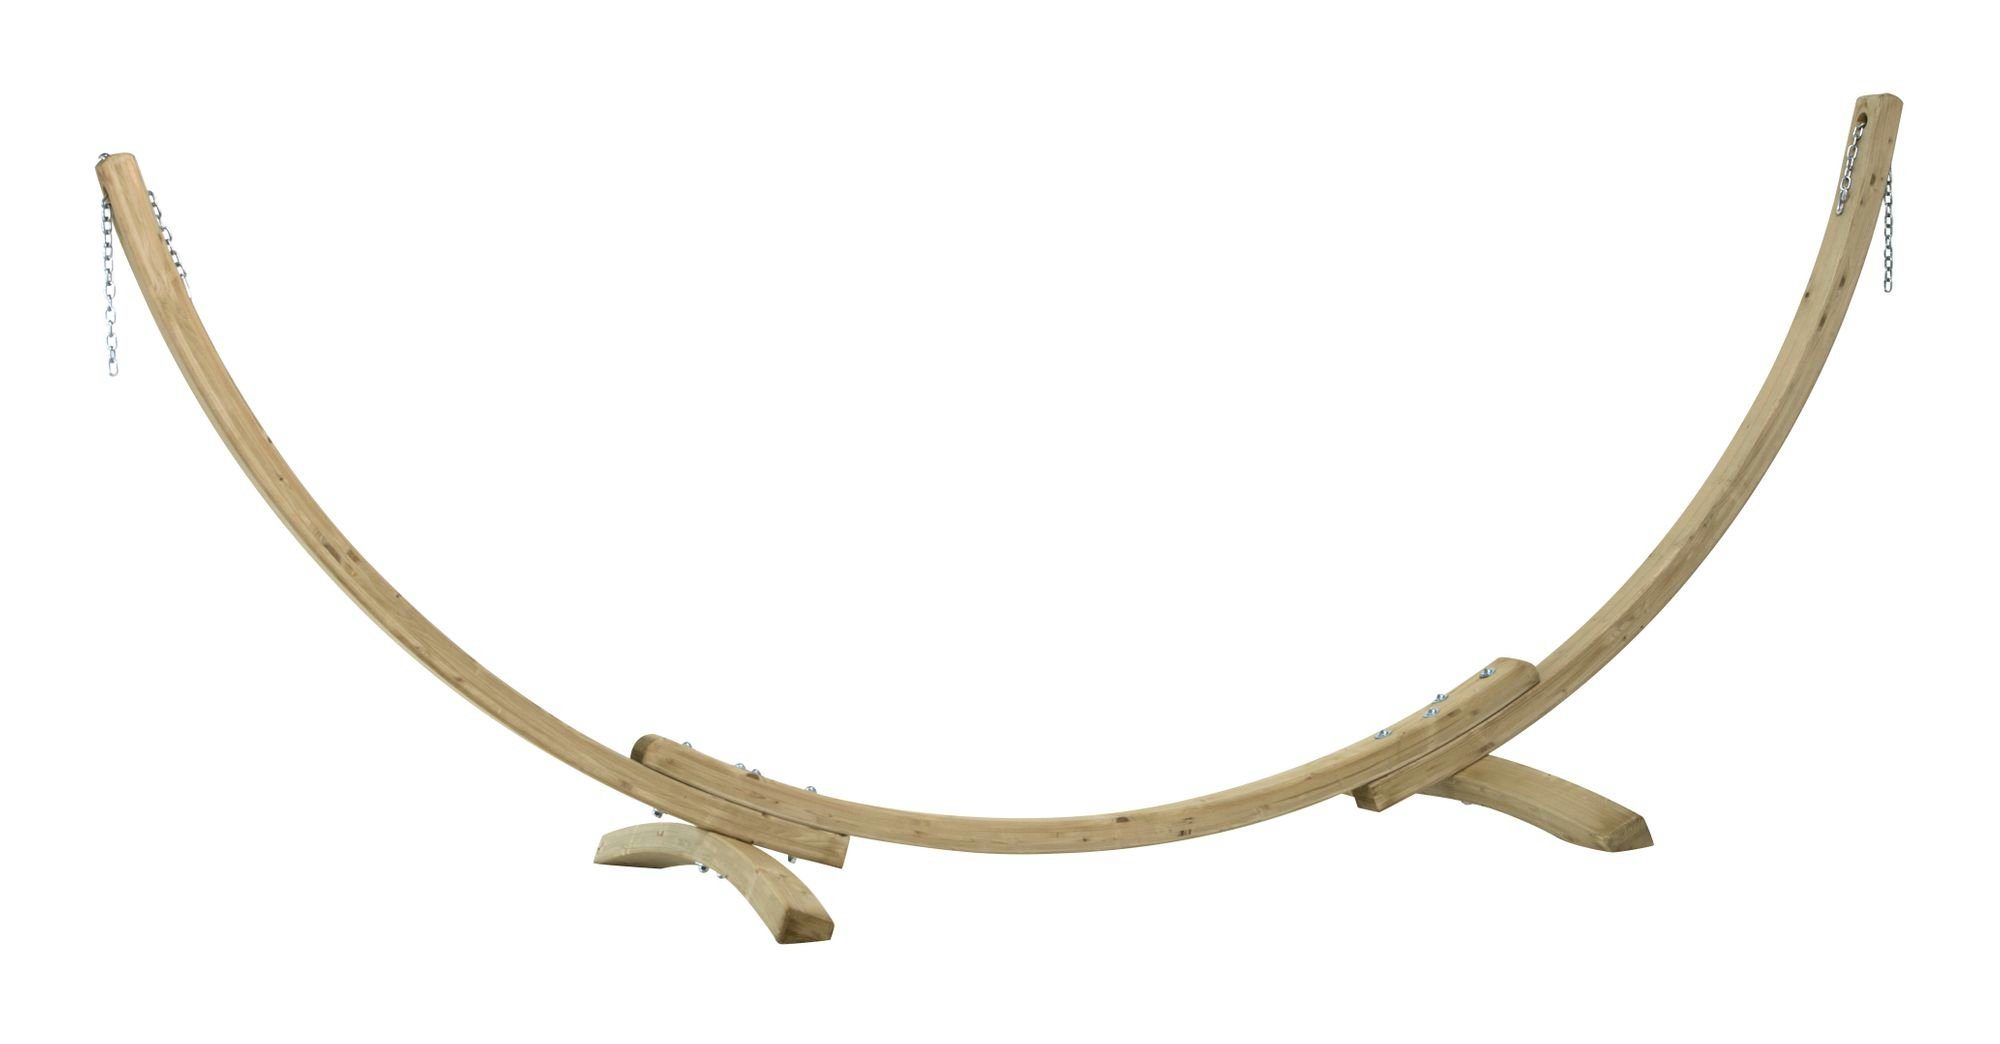 CONACORD Hängematte Hängemattengestell Premium Holz Gestell für Hängematte Hängeliege von 250-310cm bis 160 kg, variable Einstellung der Kettenlänge für Hängematten von 250 bis 310 cm